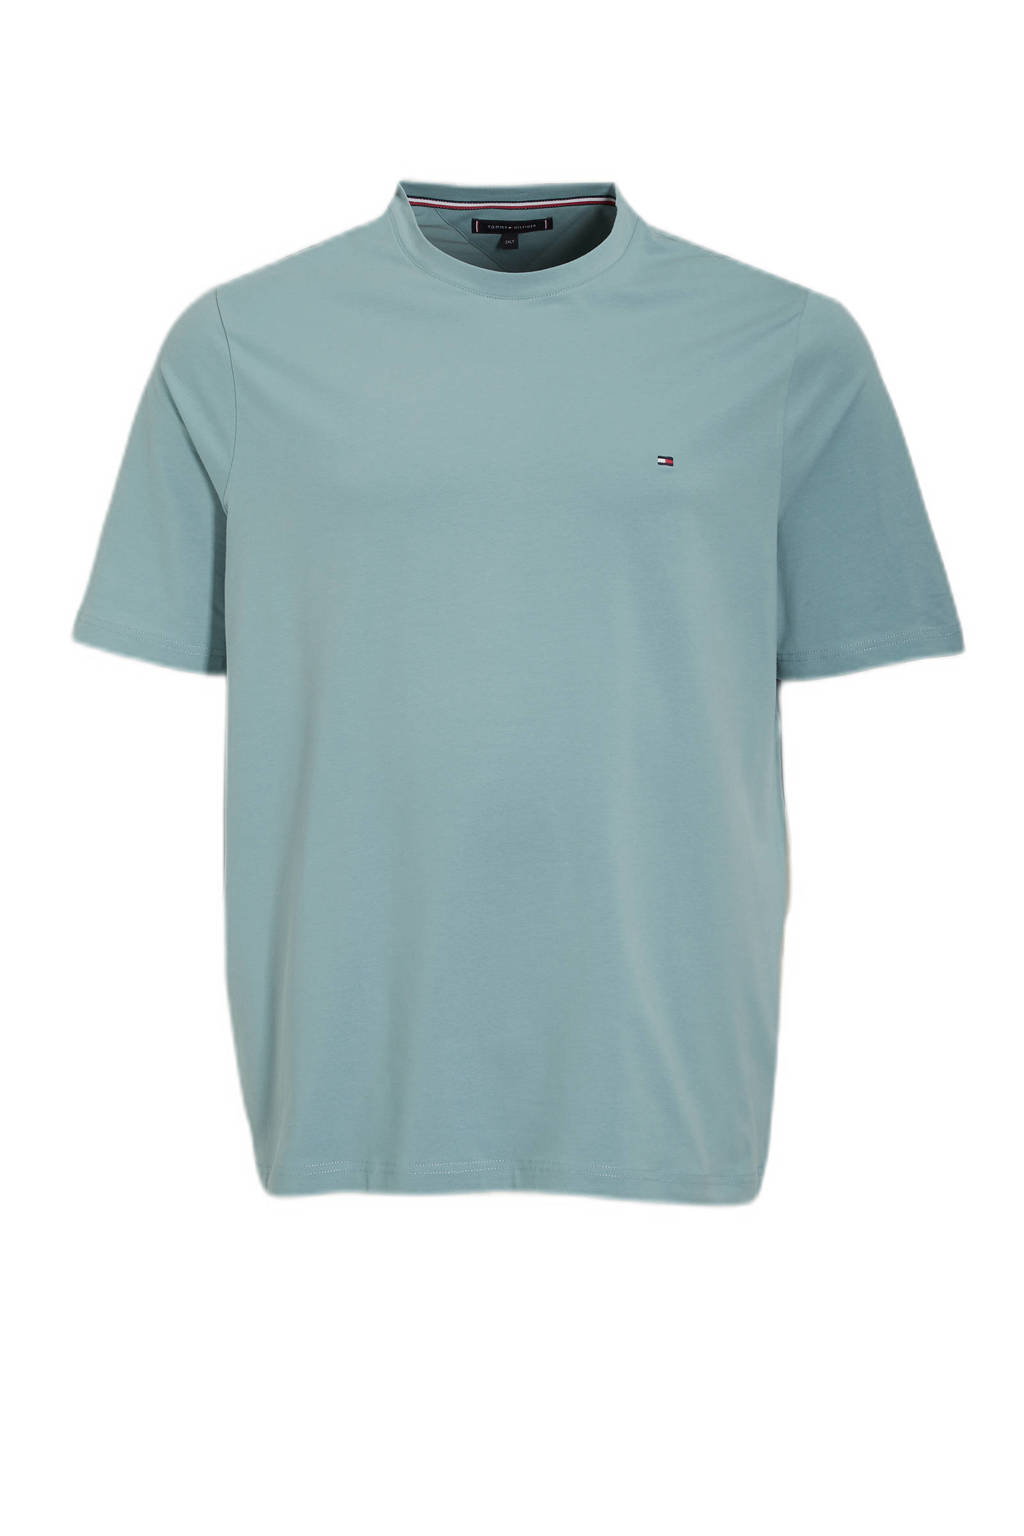 Tommy Hilfiger Big & Tall T-shirt Plus Size lofty blue